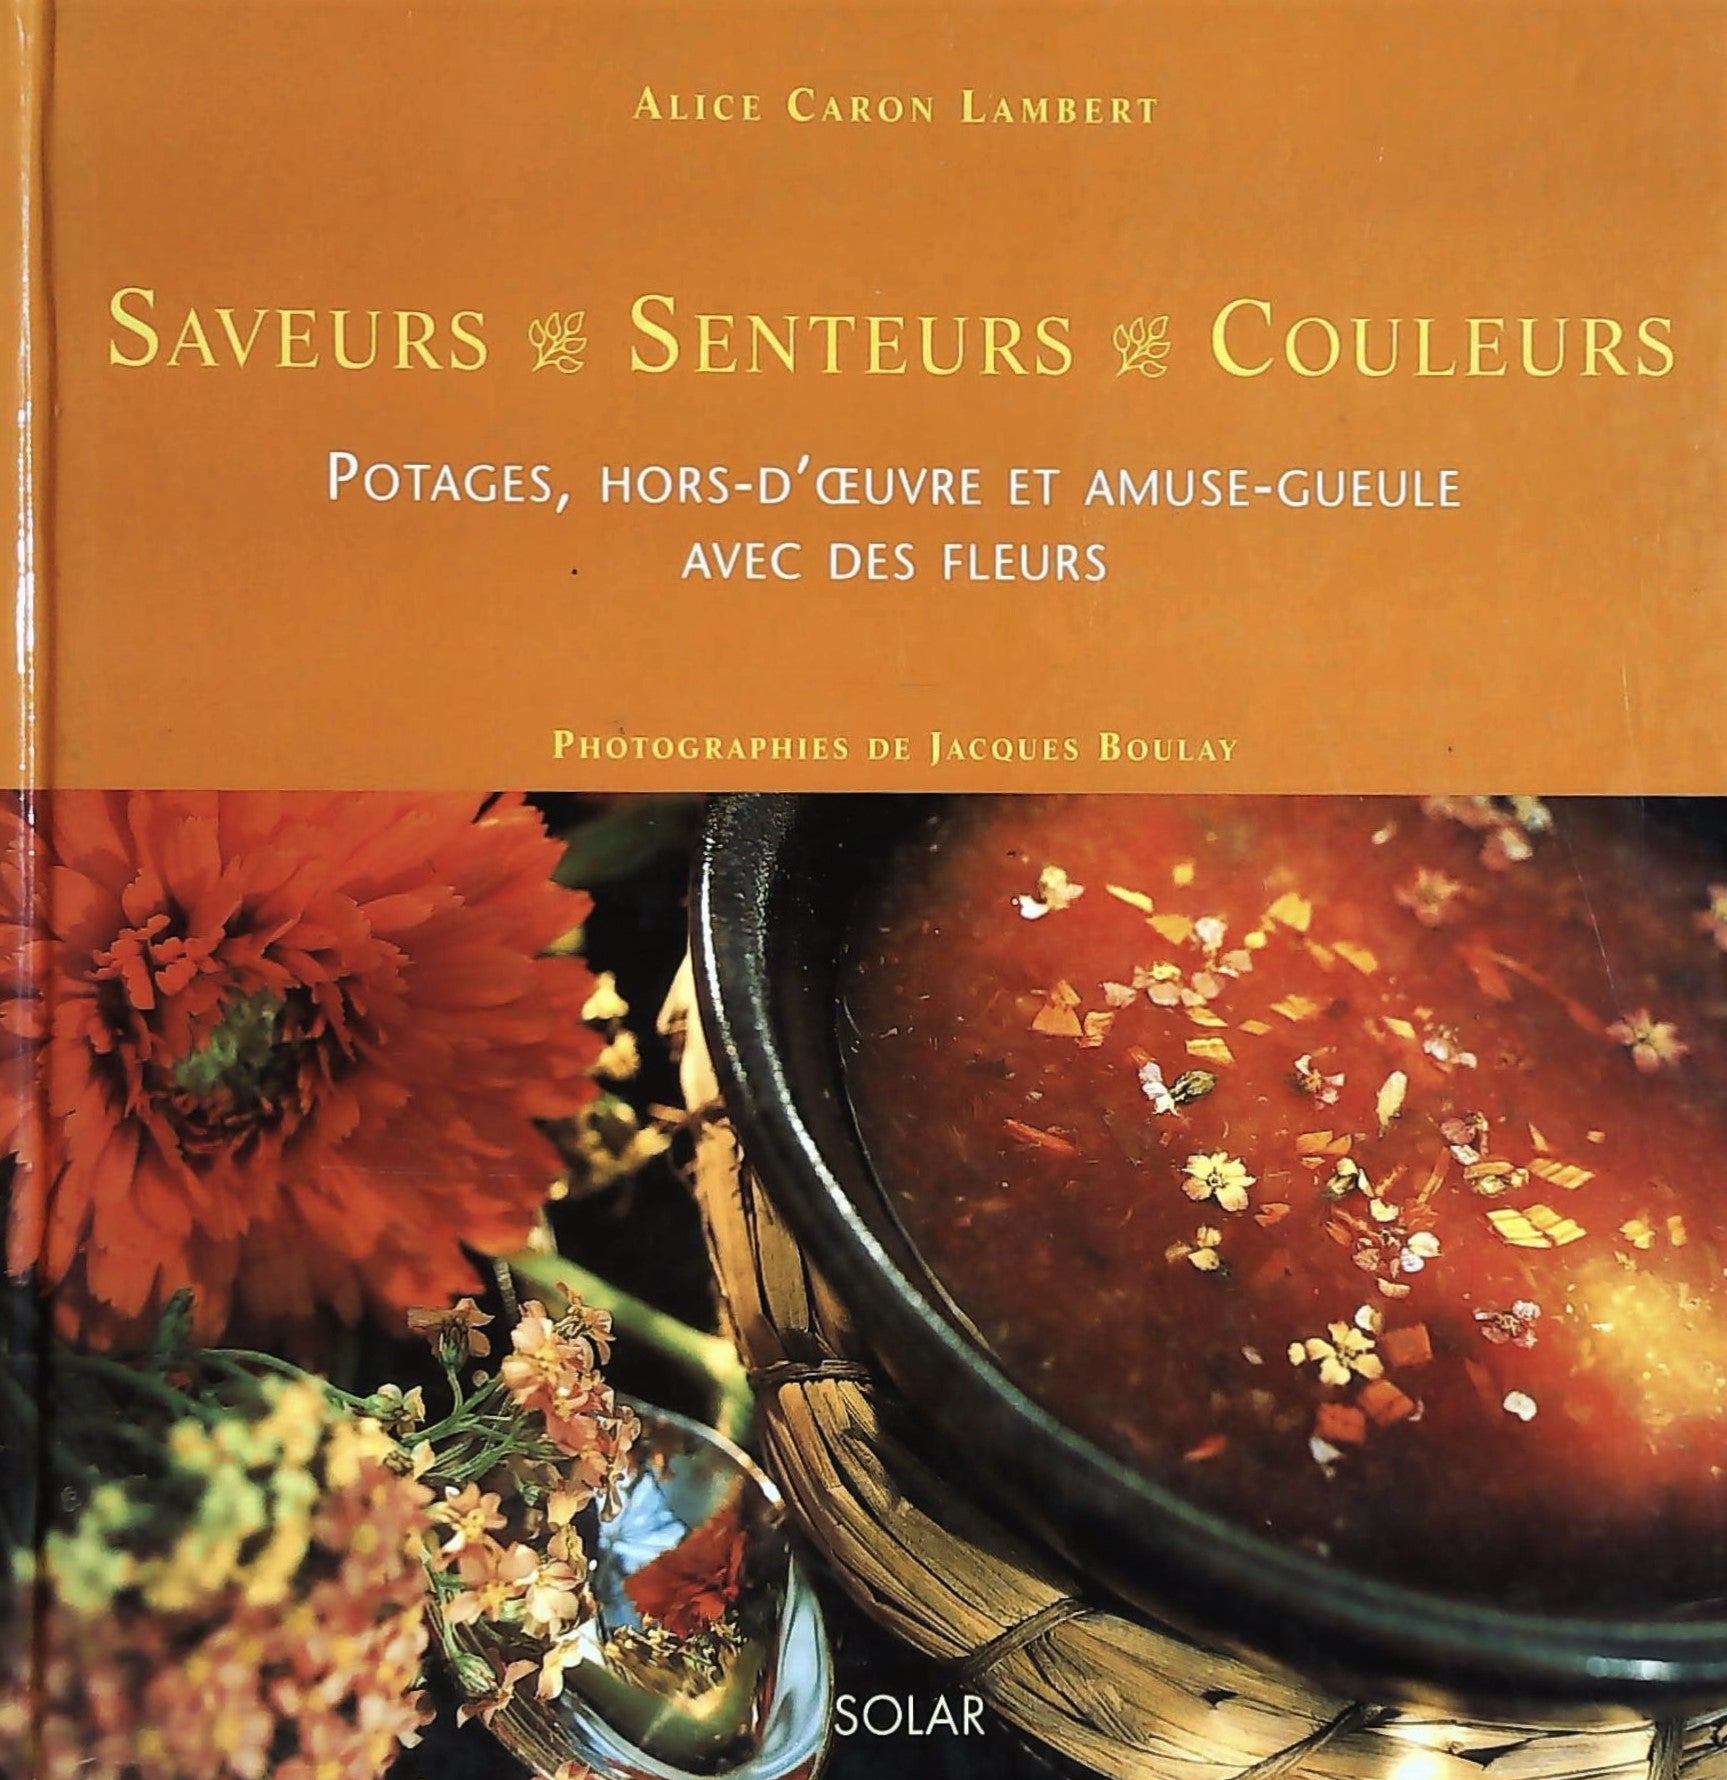 Livre ISBN 2263031405 Saveurs, senteurs, couleurs : Potages, hors d'oeuvre et amuse-gueule avec des fleurs (Alice Caron Lambert)